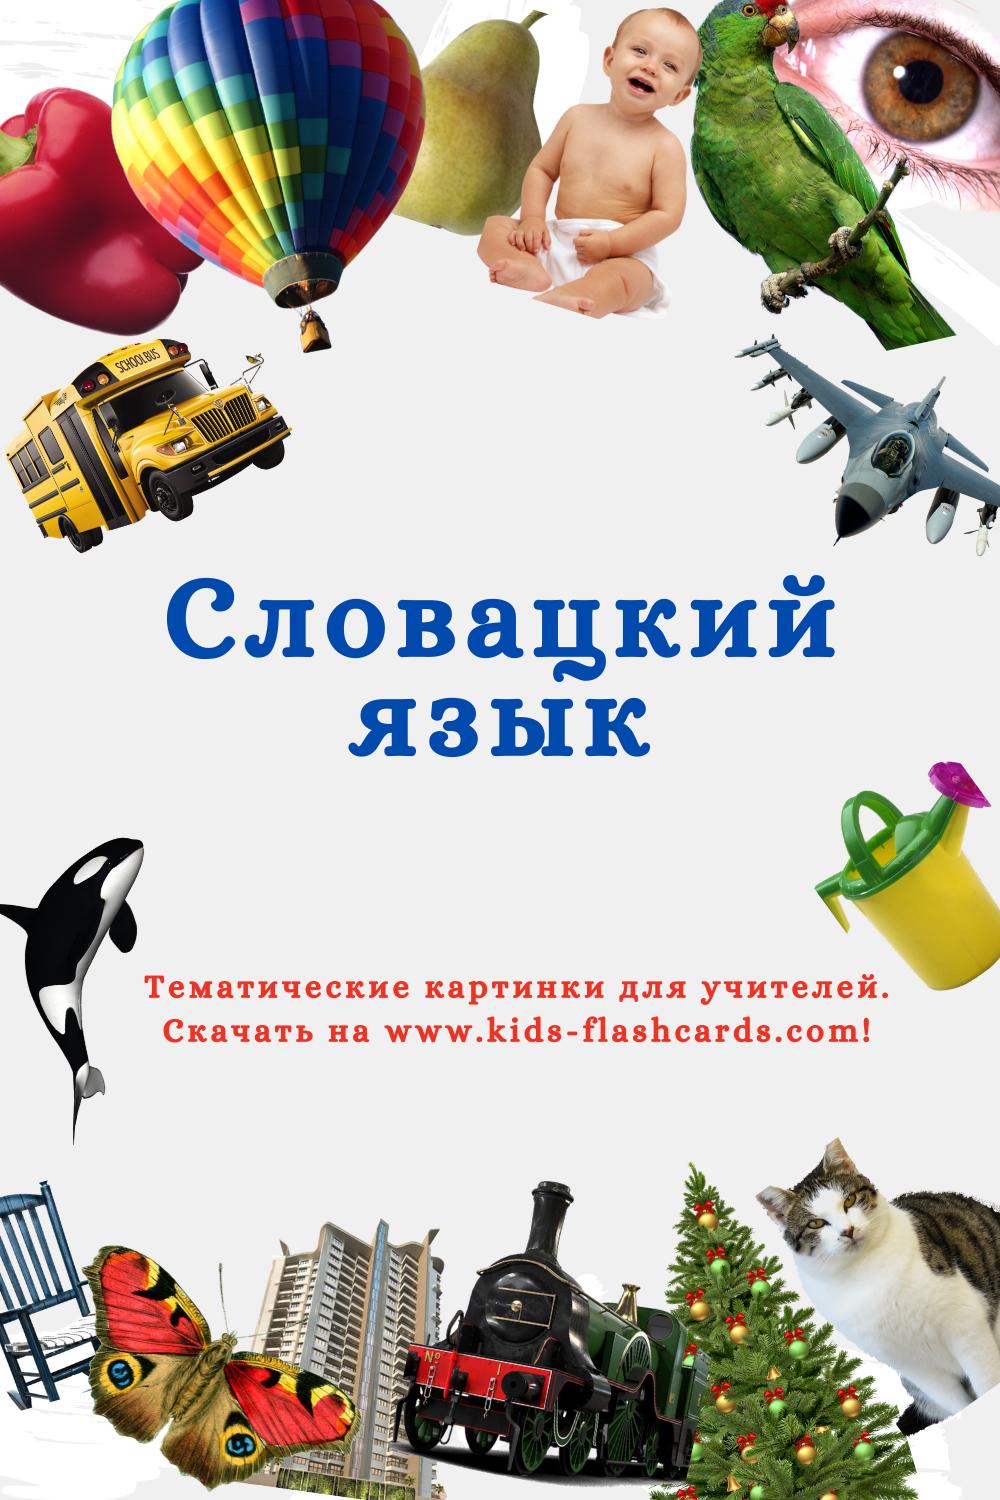 Словацкий язык - распечатки для детей